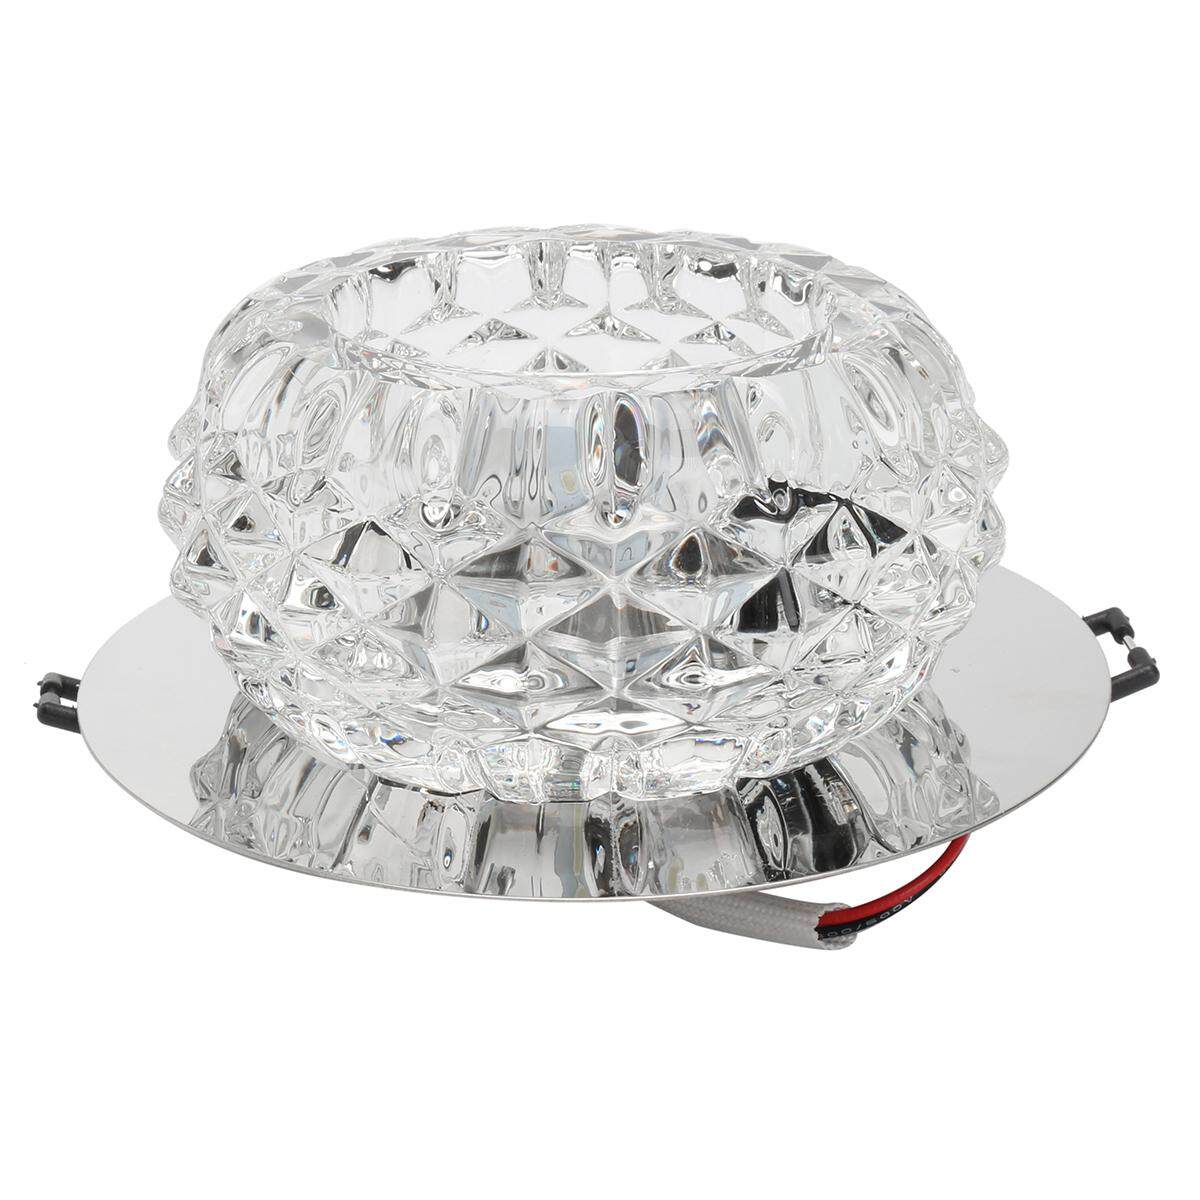 Modern Crystal 5W LED Ceiling Light Fixture Pendant Lamp Lighting Chandelier - intl